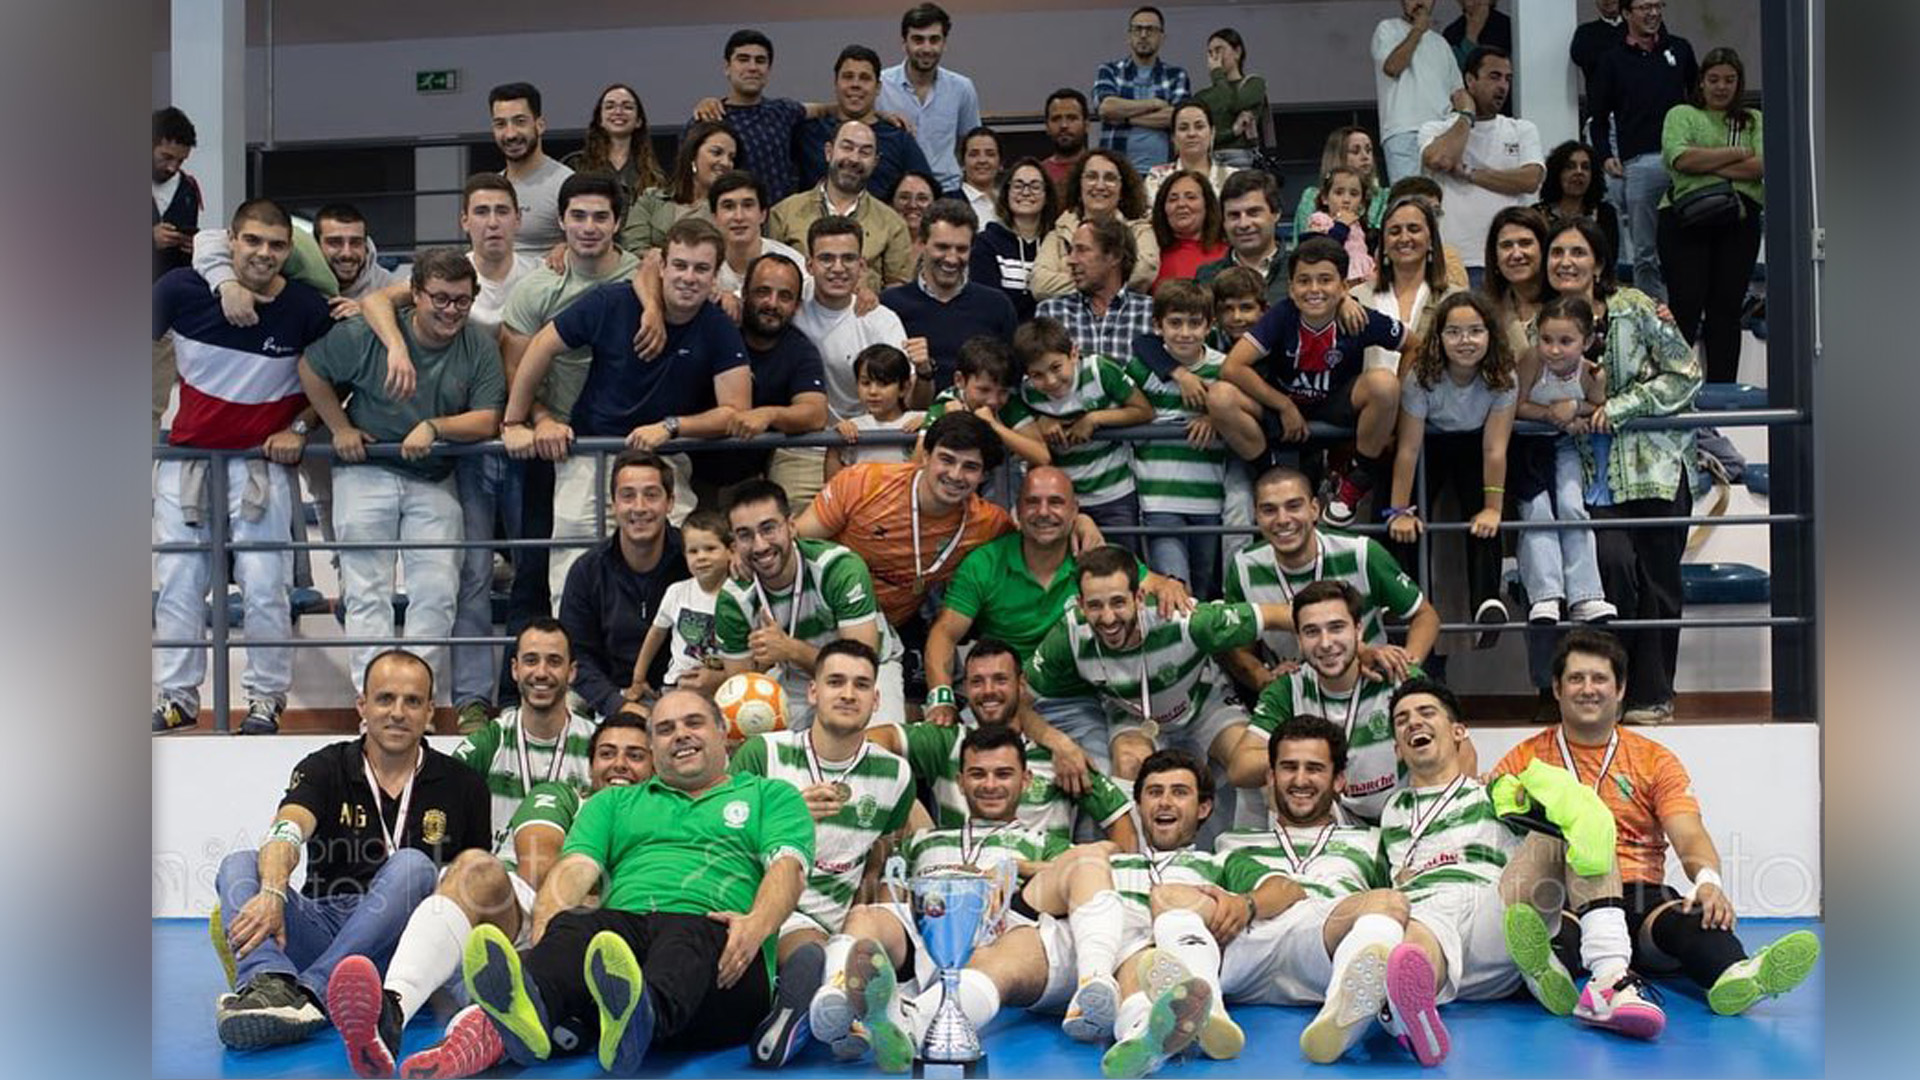 Equipa sénior de Futsal do Sporting de Moura vence Taça Distrito de Beja